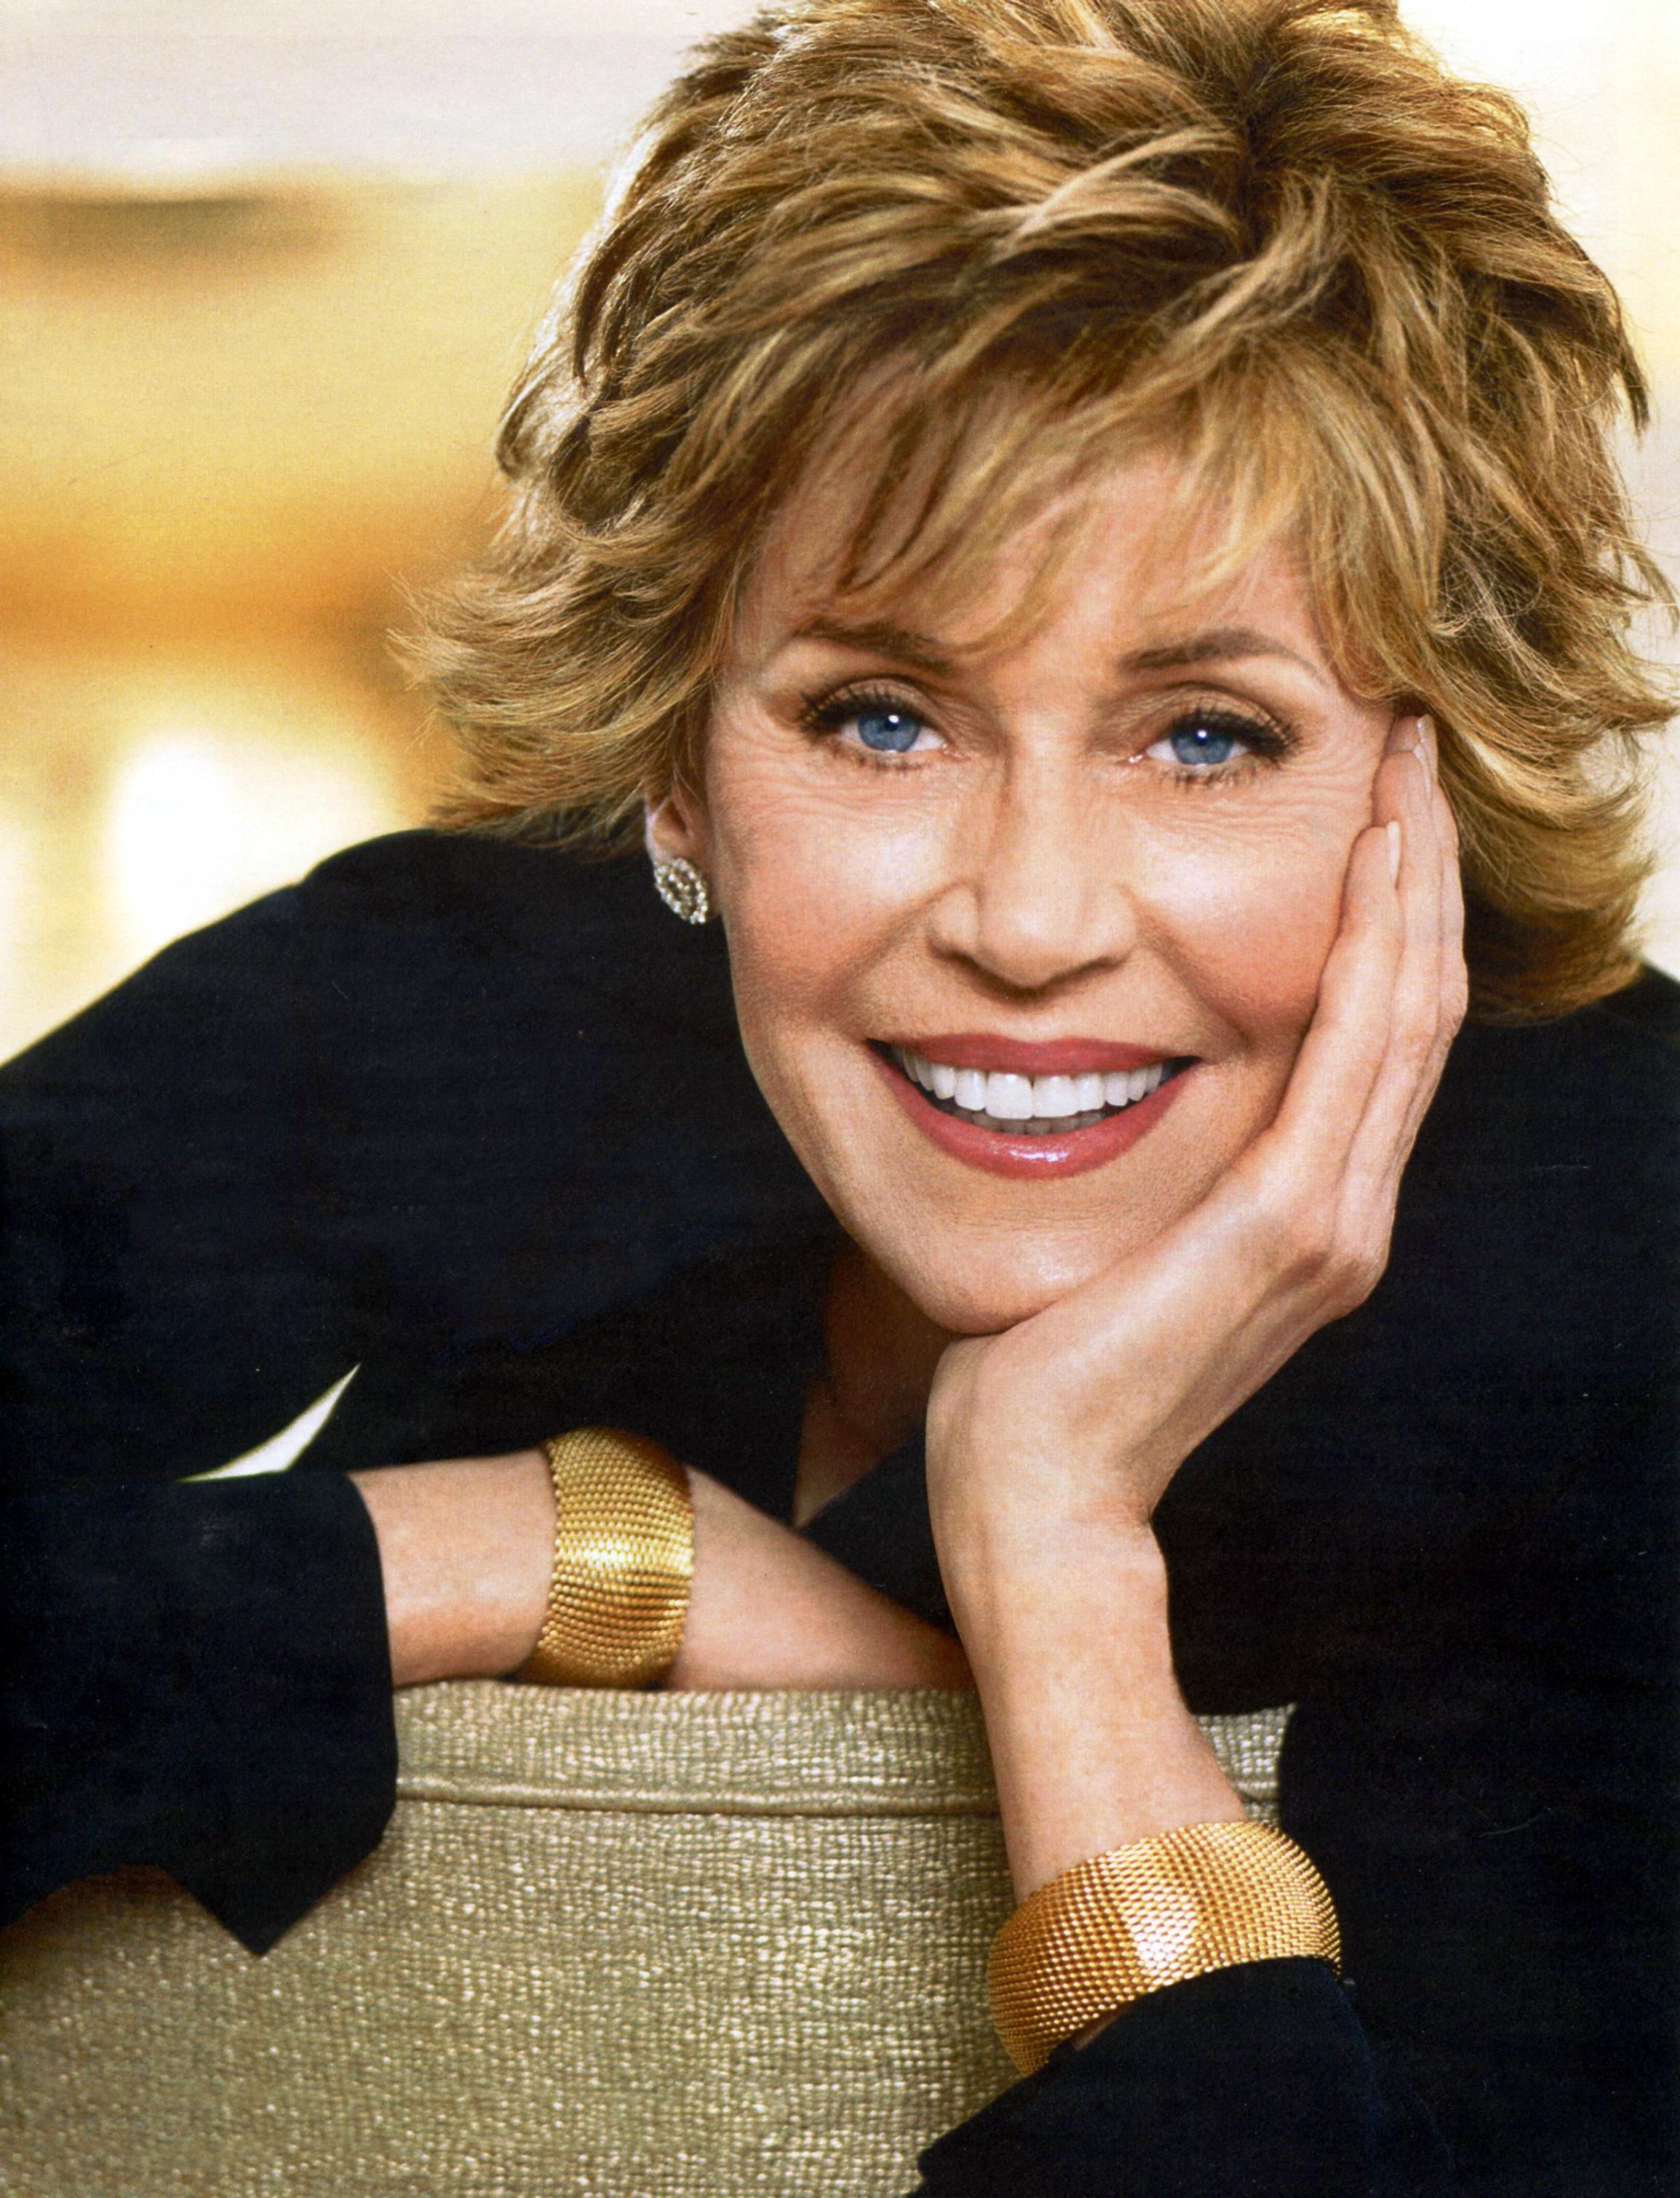 Awesome Jane Fonda HD Wallpaper Free Download